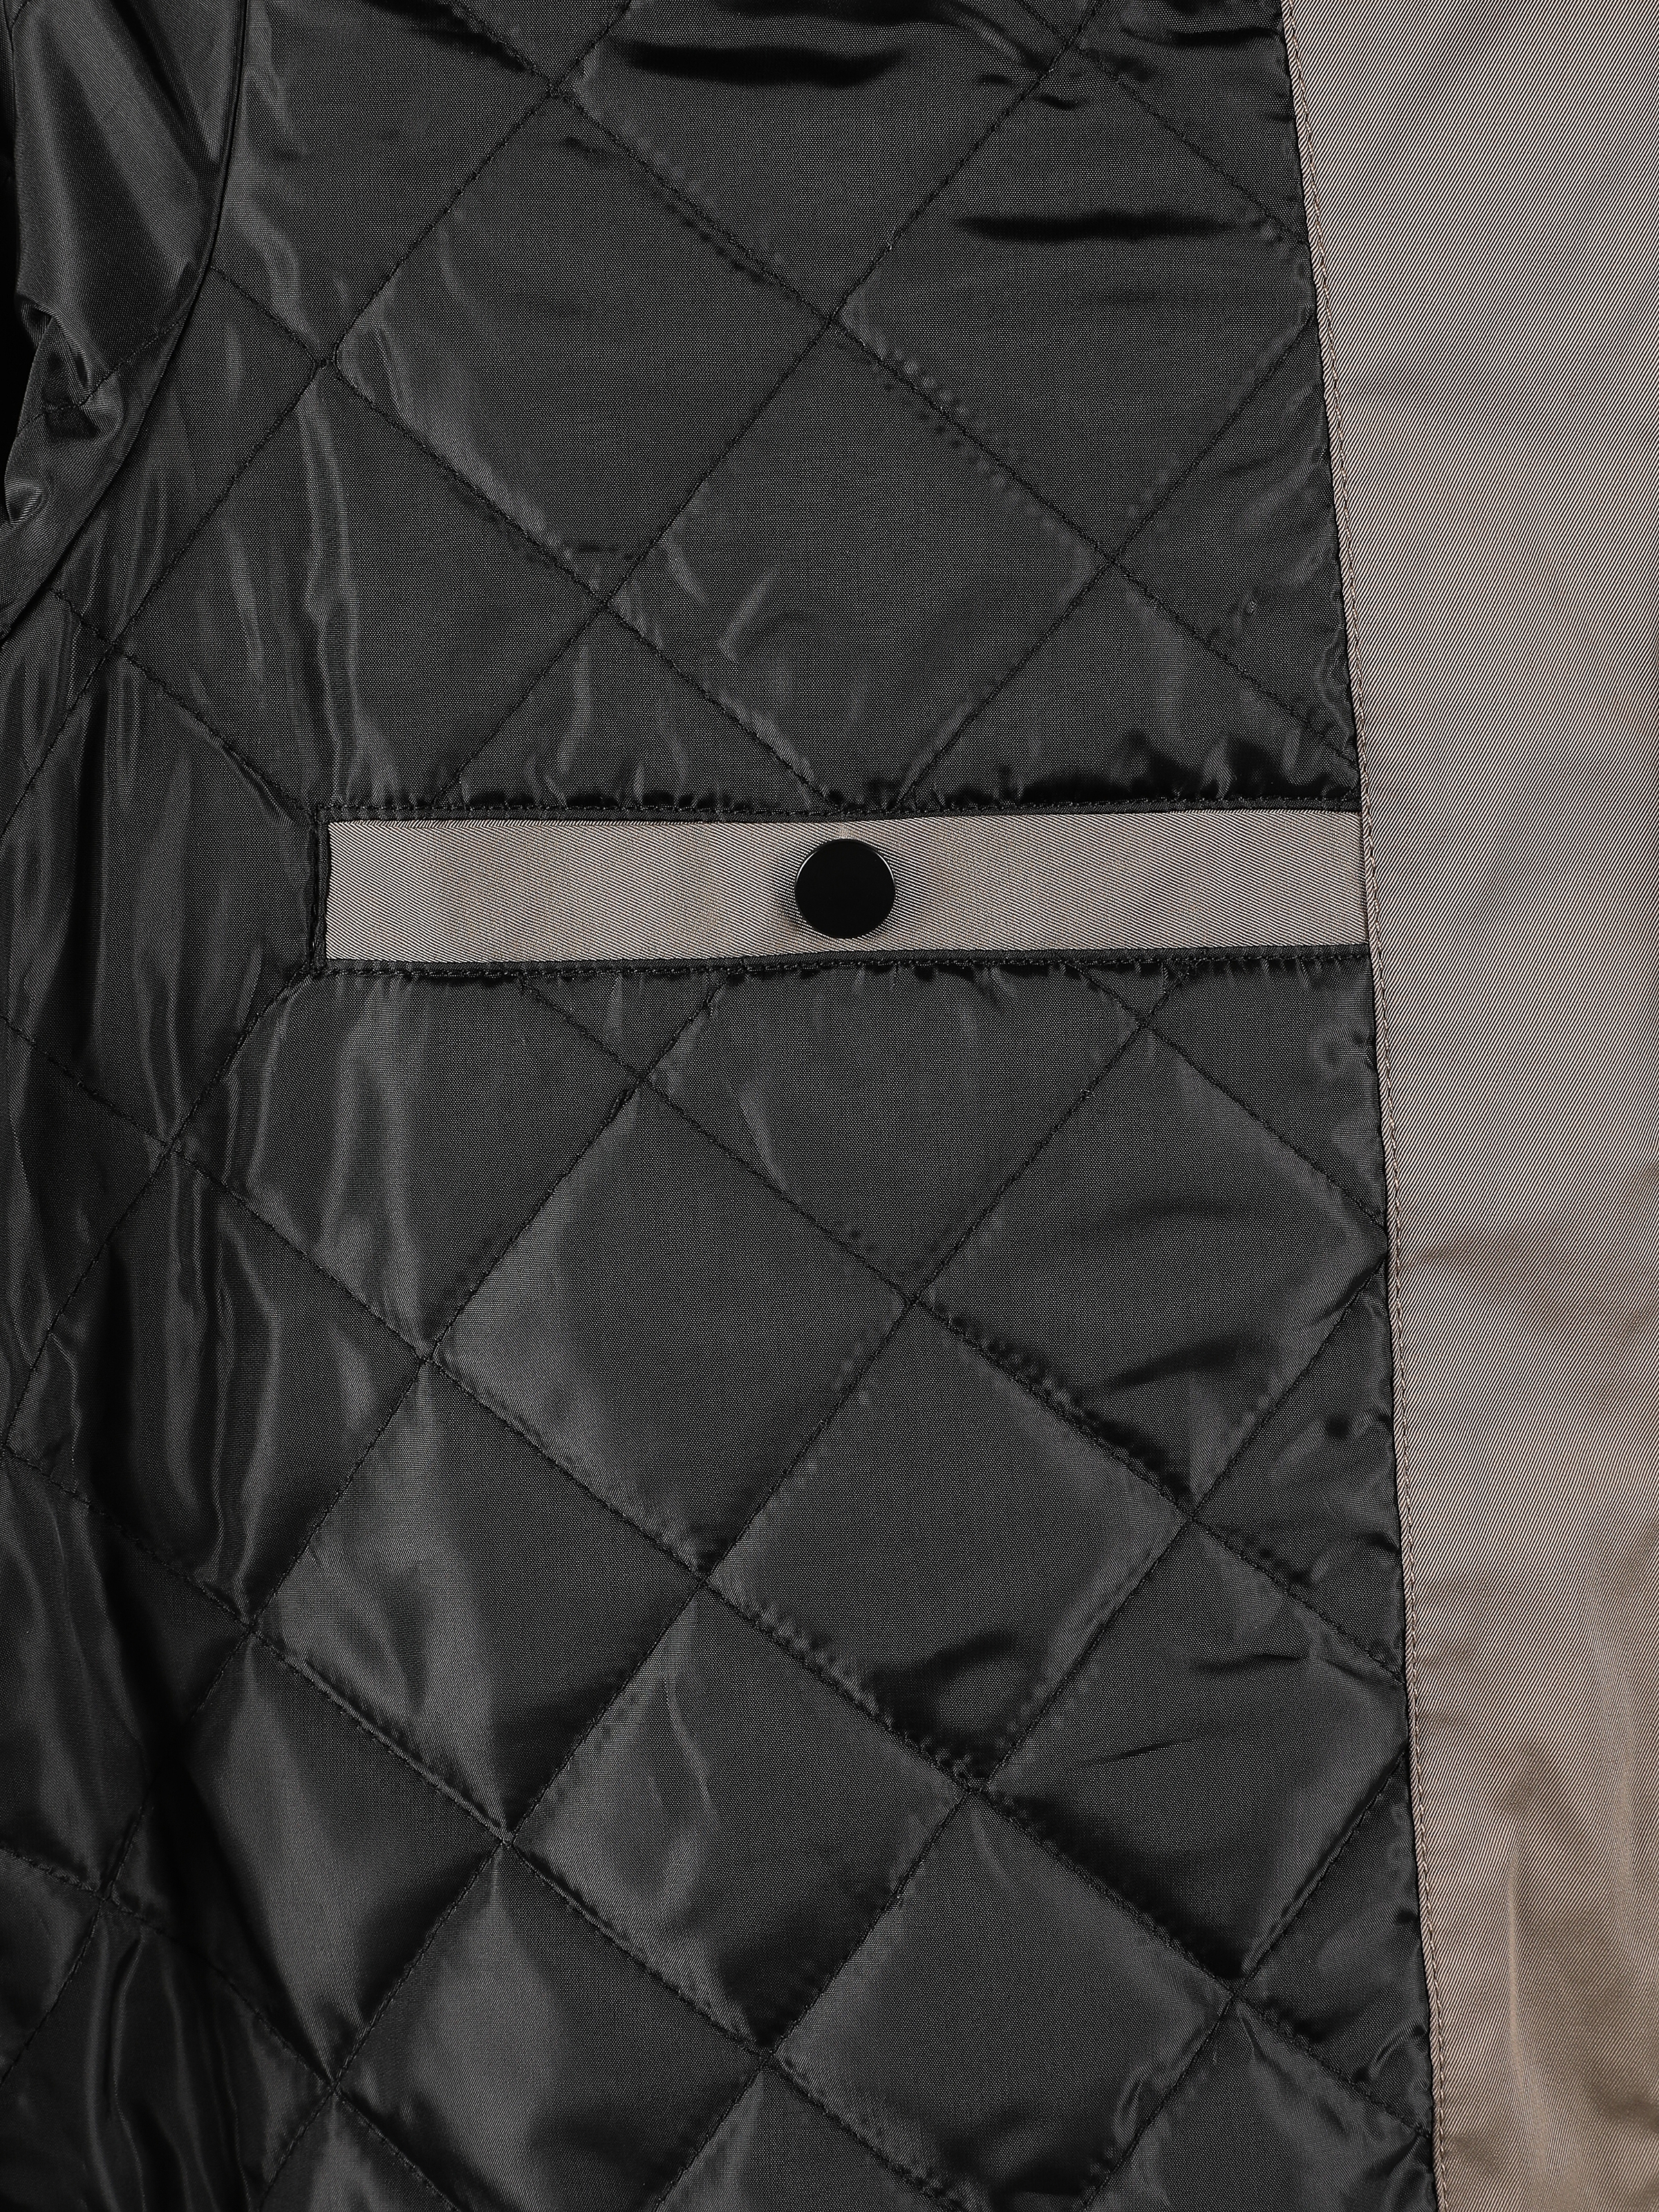 Показати інформацію про Куртка Чоловіча Сіра З Капюшоном Класичного Крою Cl1061848